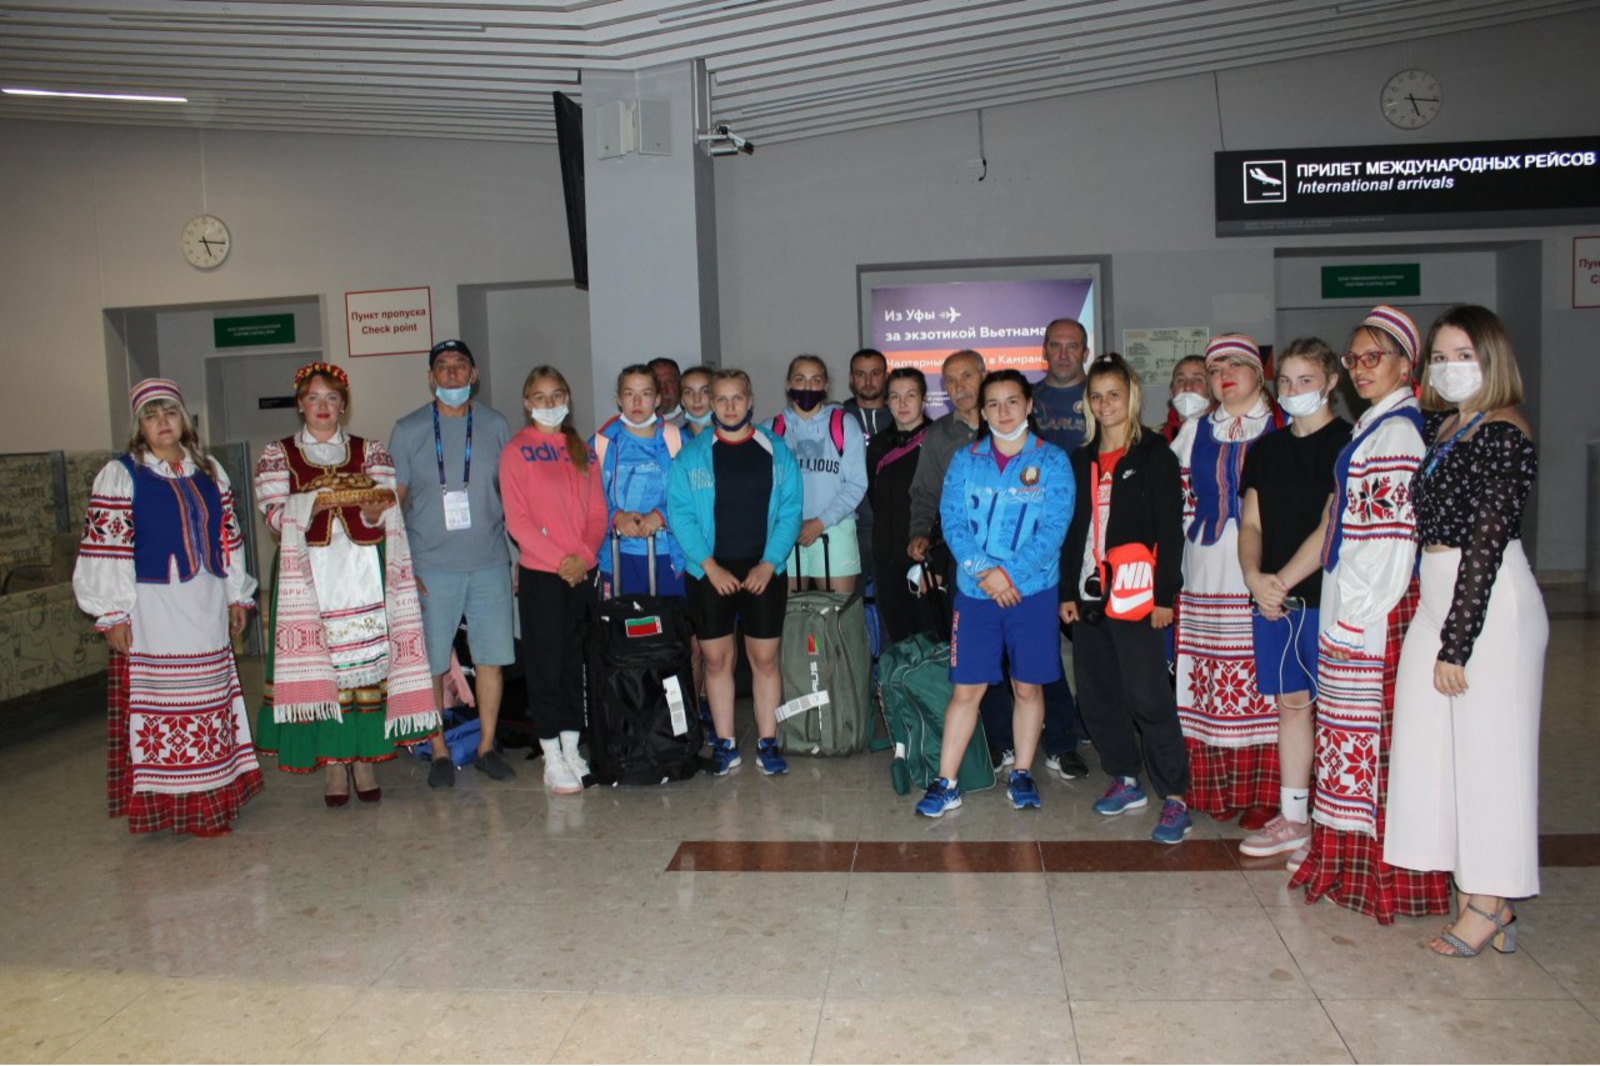 Белорусские спортсменки: «Нас нигде так не встречали, как в Башкирии»